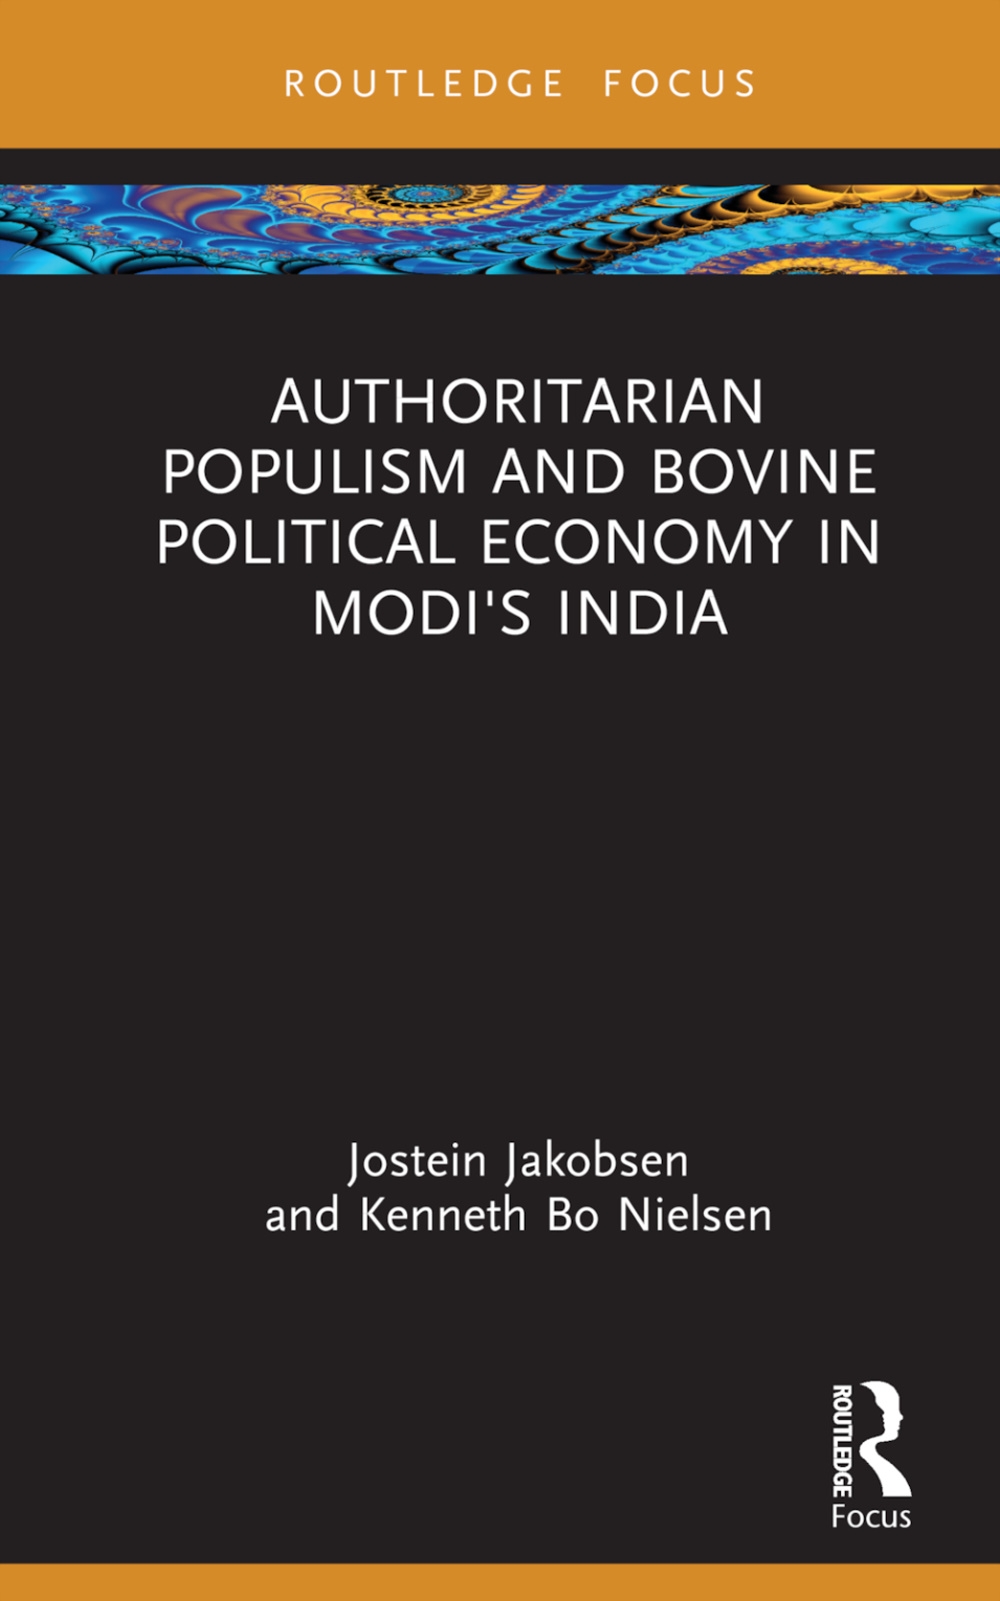 Authoritarian Populism and Bovine Politics in Modi’s India